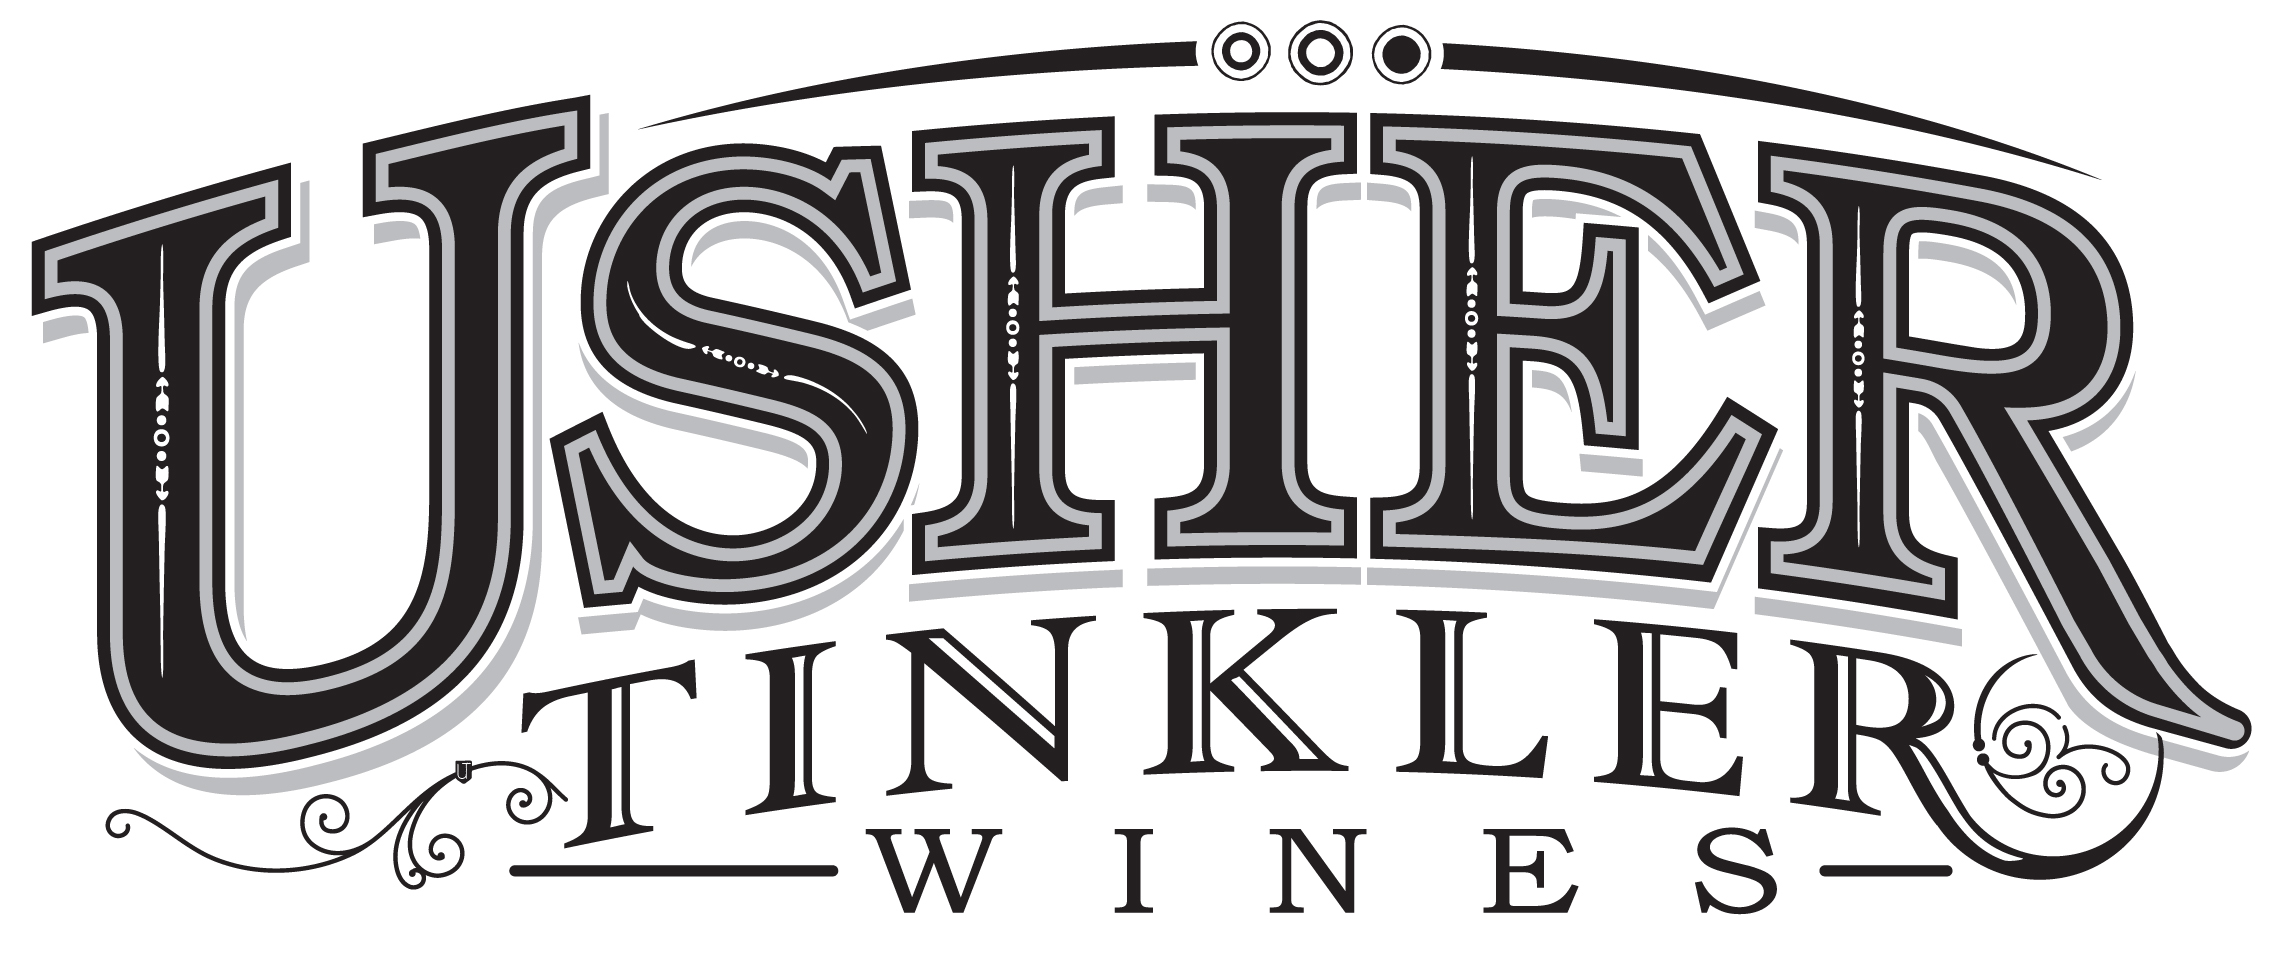 Usher Tinkler Wines logo